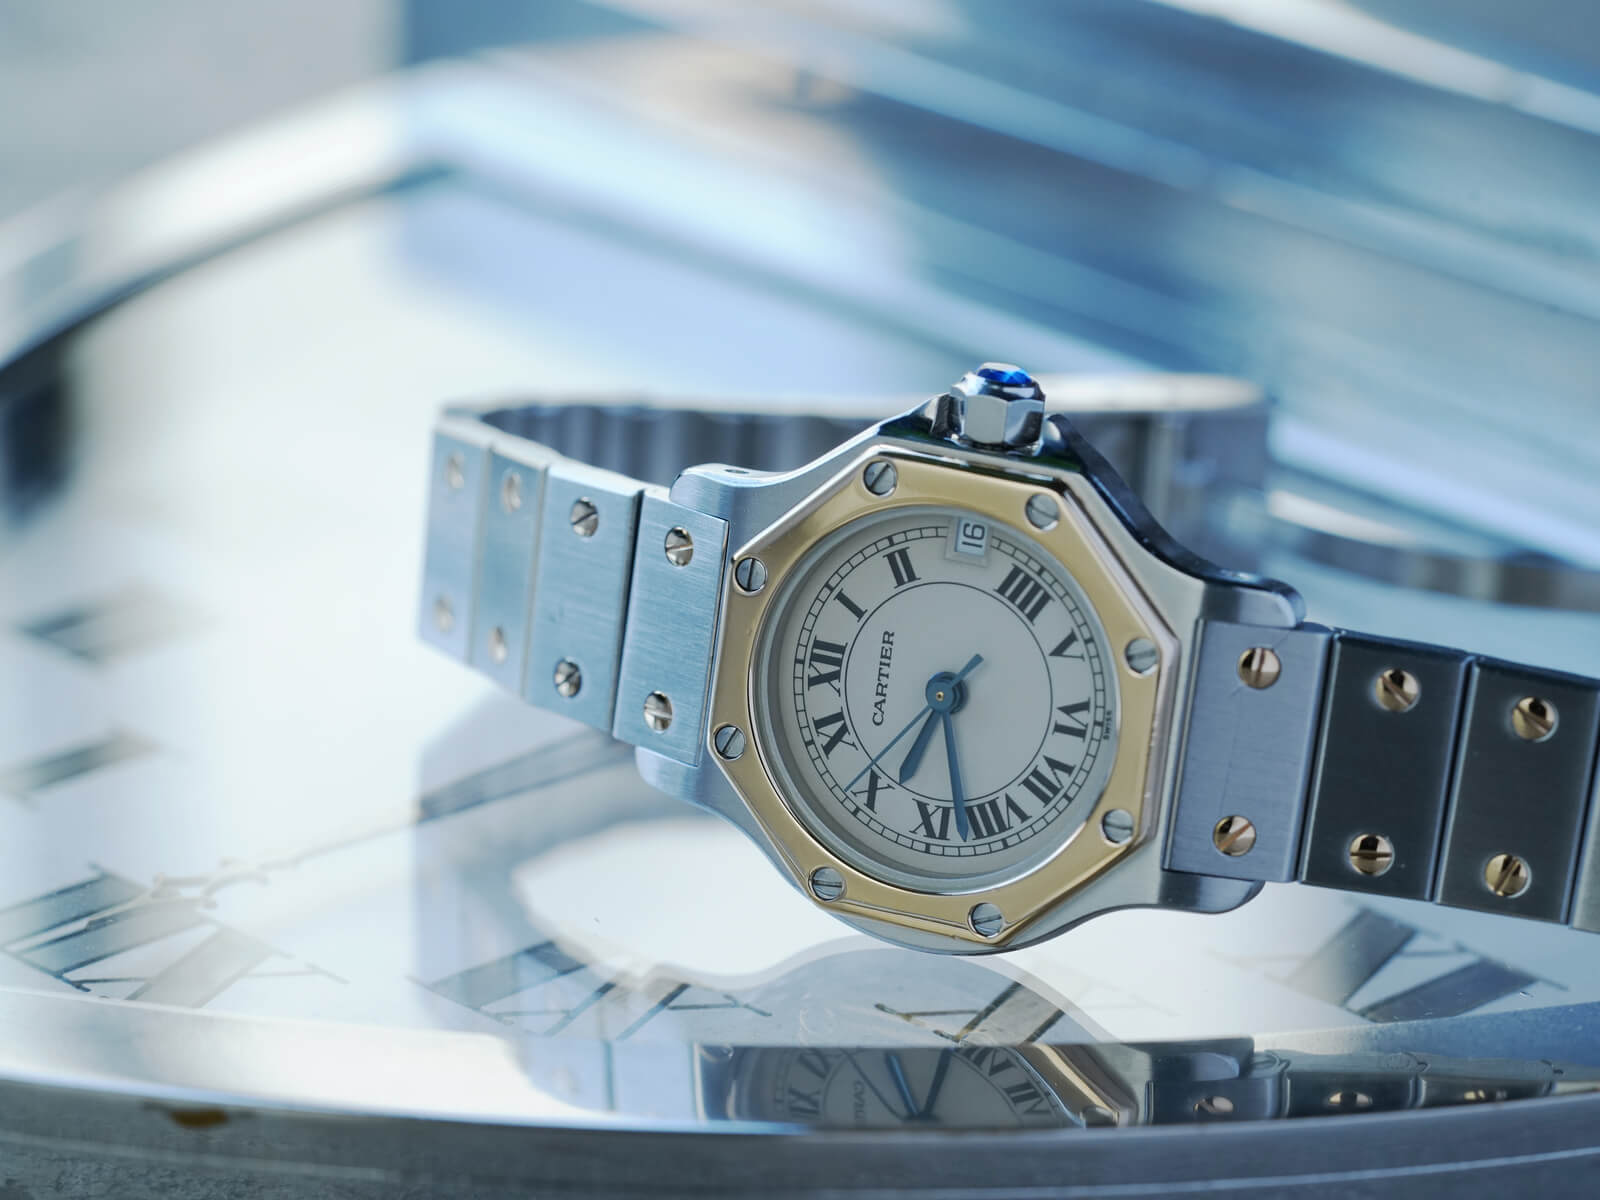 カルティエ/サントスオクタゴンSMデイト/アイボリーローマンダイヤル/Cartier/Santos Octagon Date/Ivory Roman  Dial | 江口洋品店・江口時計店 / Eguchi Store Watch, Repair, Clothes